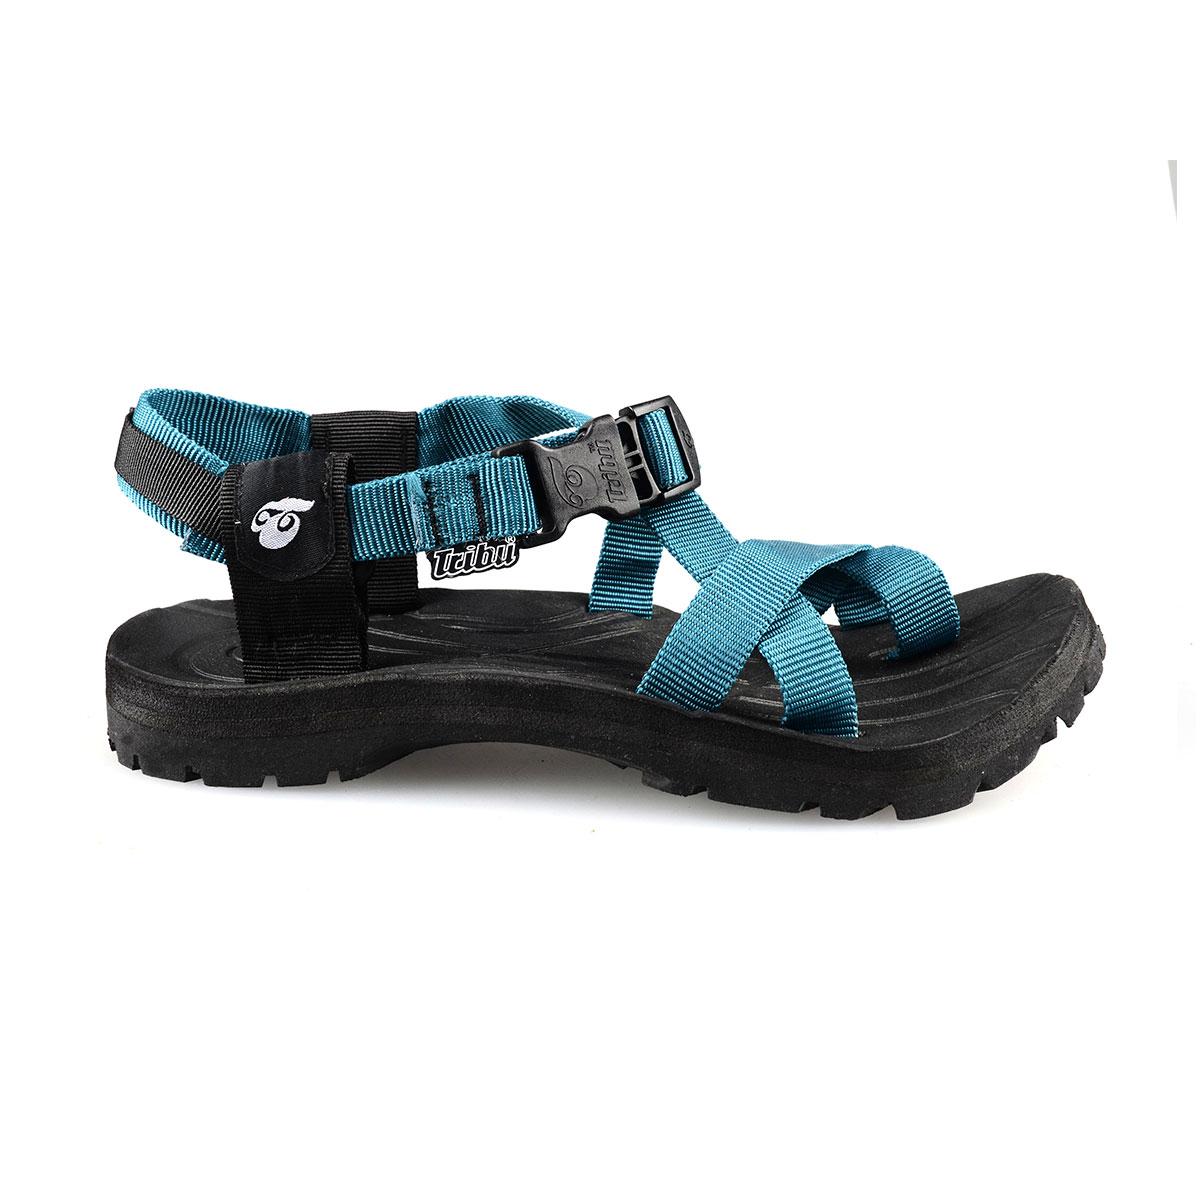 Tribu Outdoor Sandals SBN Teal: Buy 